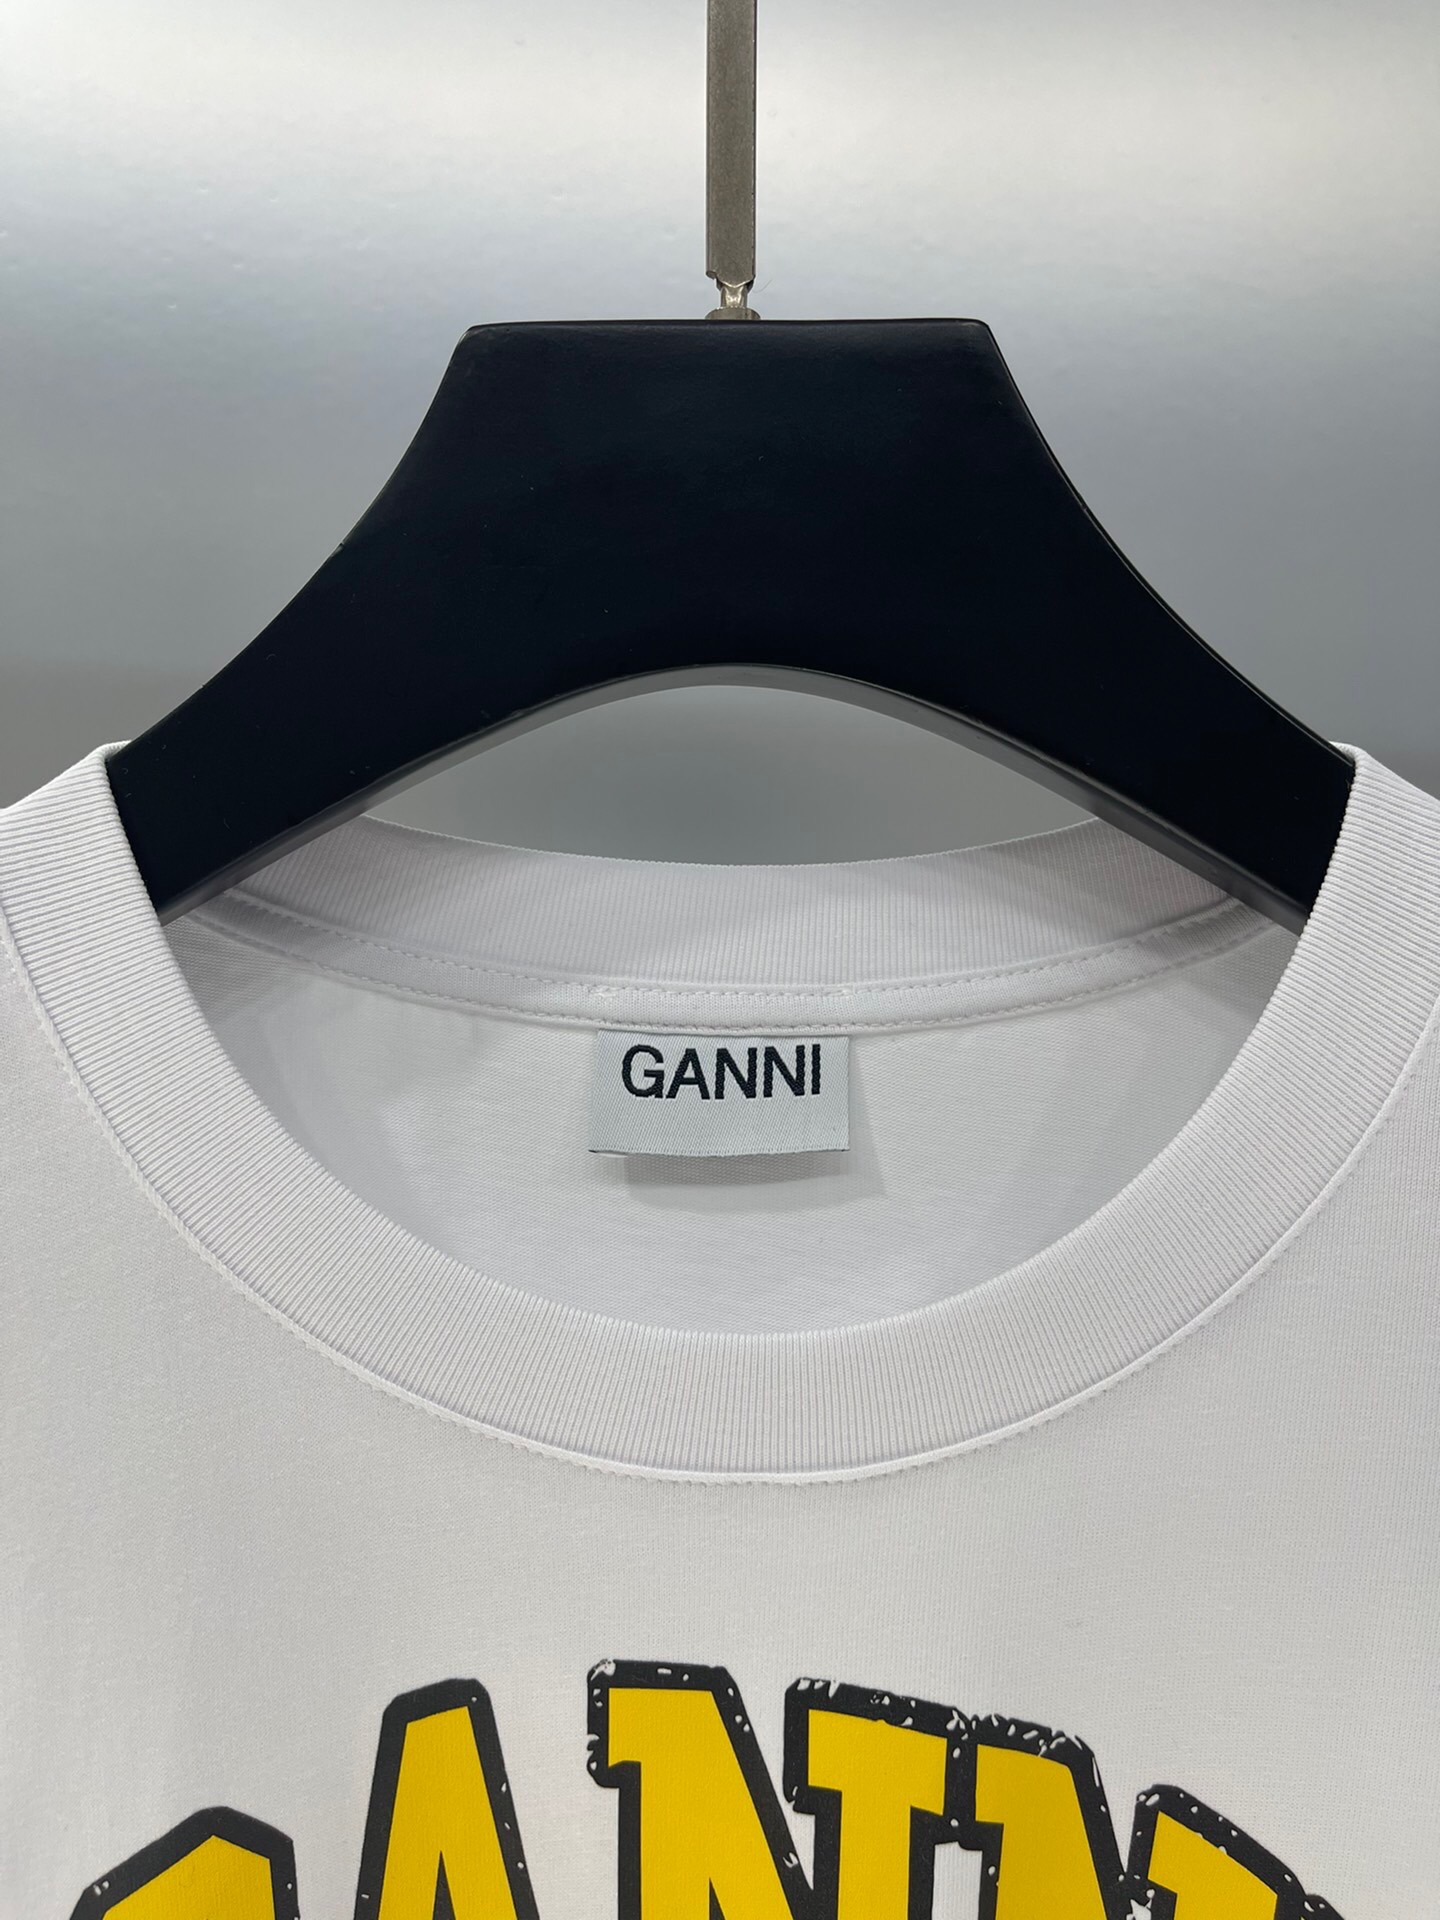 独家首发高端原单品质GAN*I24/新款印花胸前字母香蕉图案短袖T恤低调高级经典版型上身巨显瘦优雅气质减